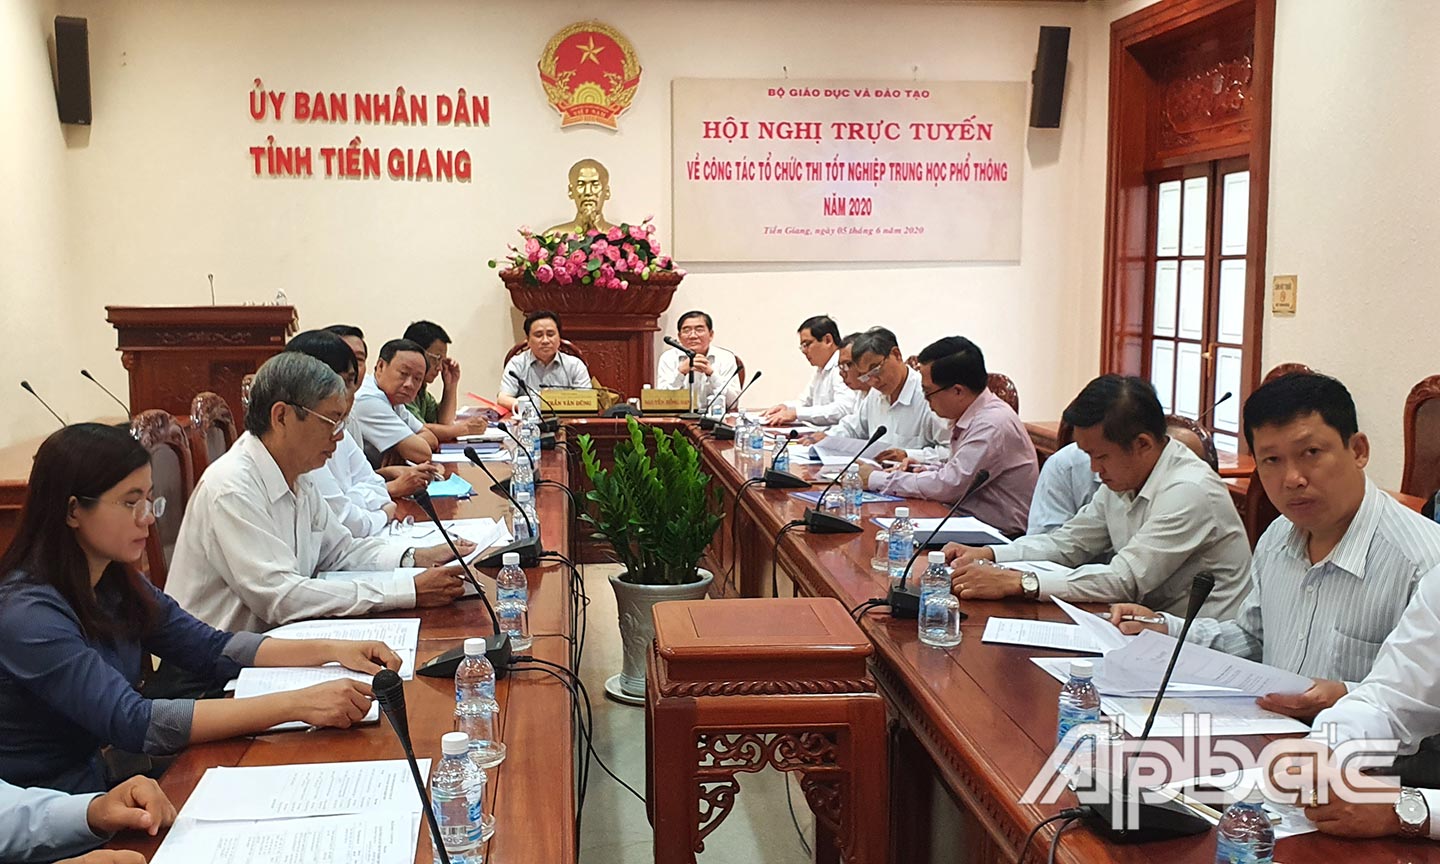 Quang cảnh hội nghị tại điểm cầu tỉnh Tiền Giang.